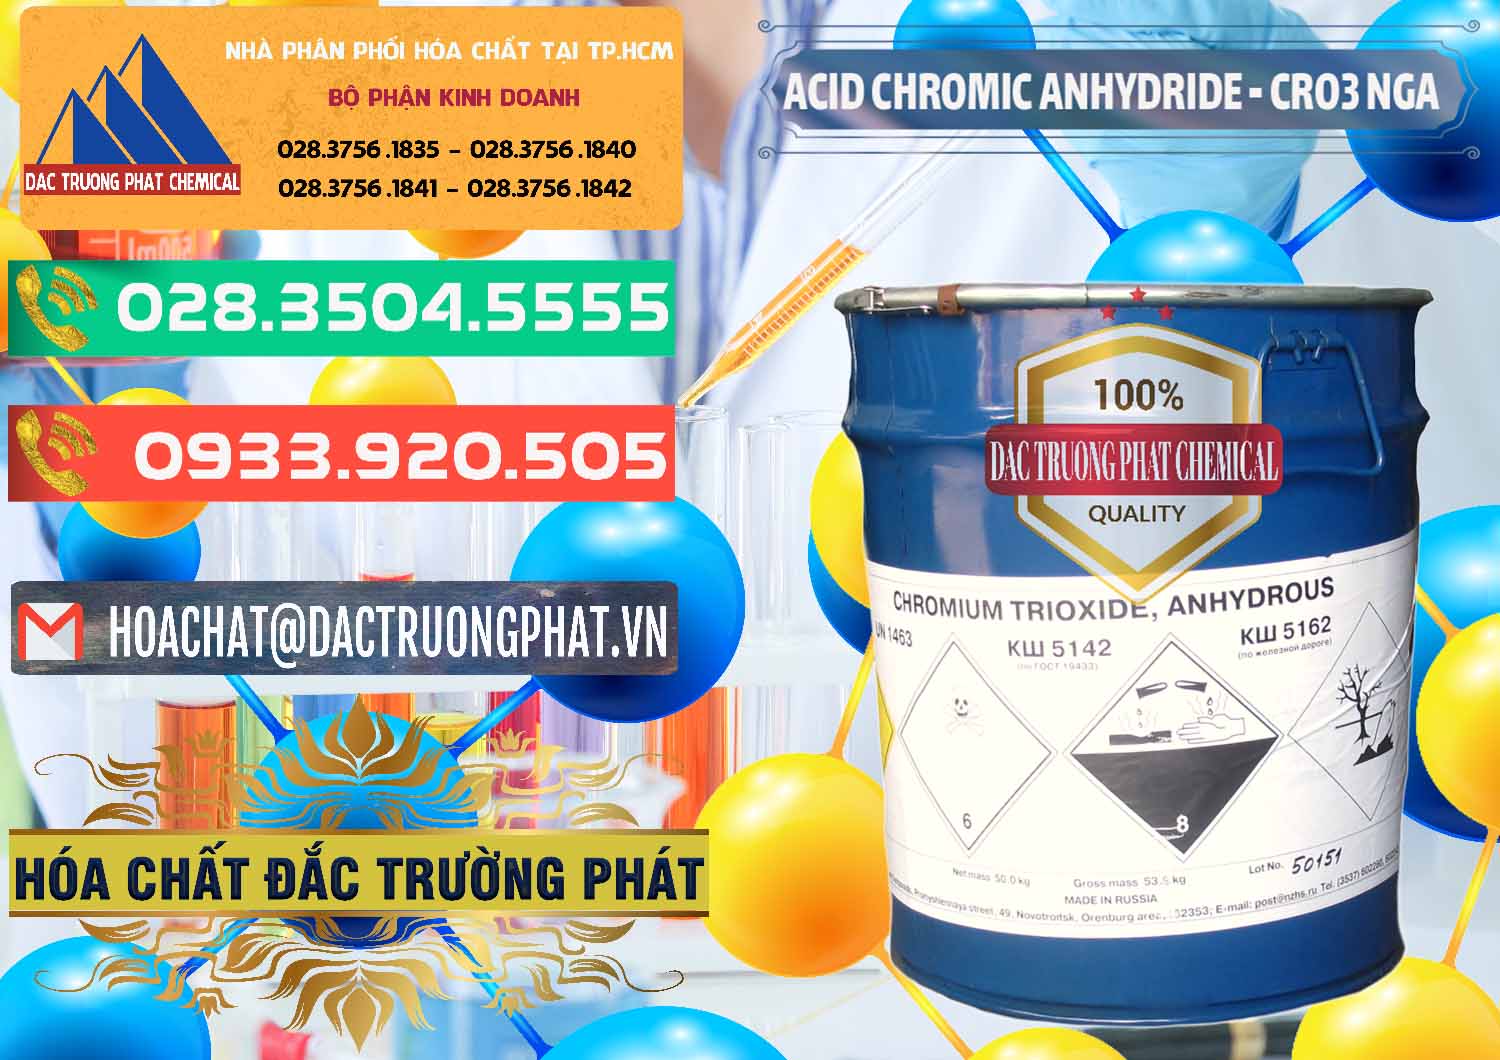 Cung ứng & bán Acid Chromic Anhydride - Cromic CRO3 Nga Russia - 0006 - Cung cấp & nhập khẩu hóa chất tại TP.HCM - congtyhoachat.com.vn